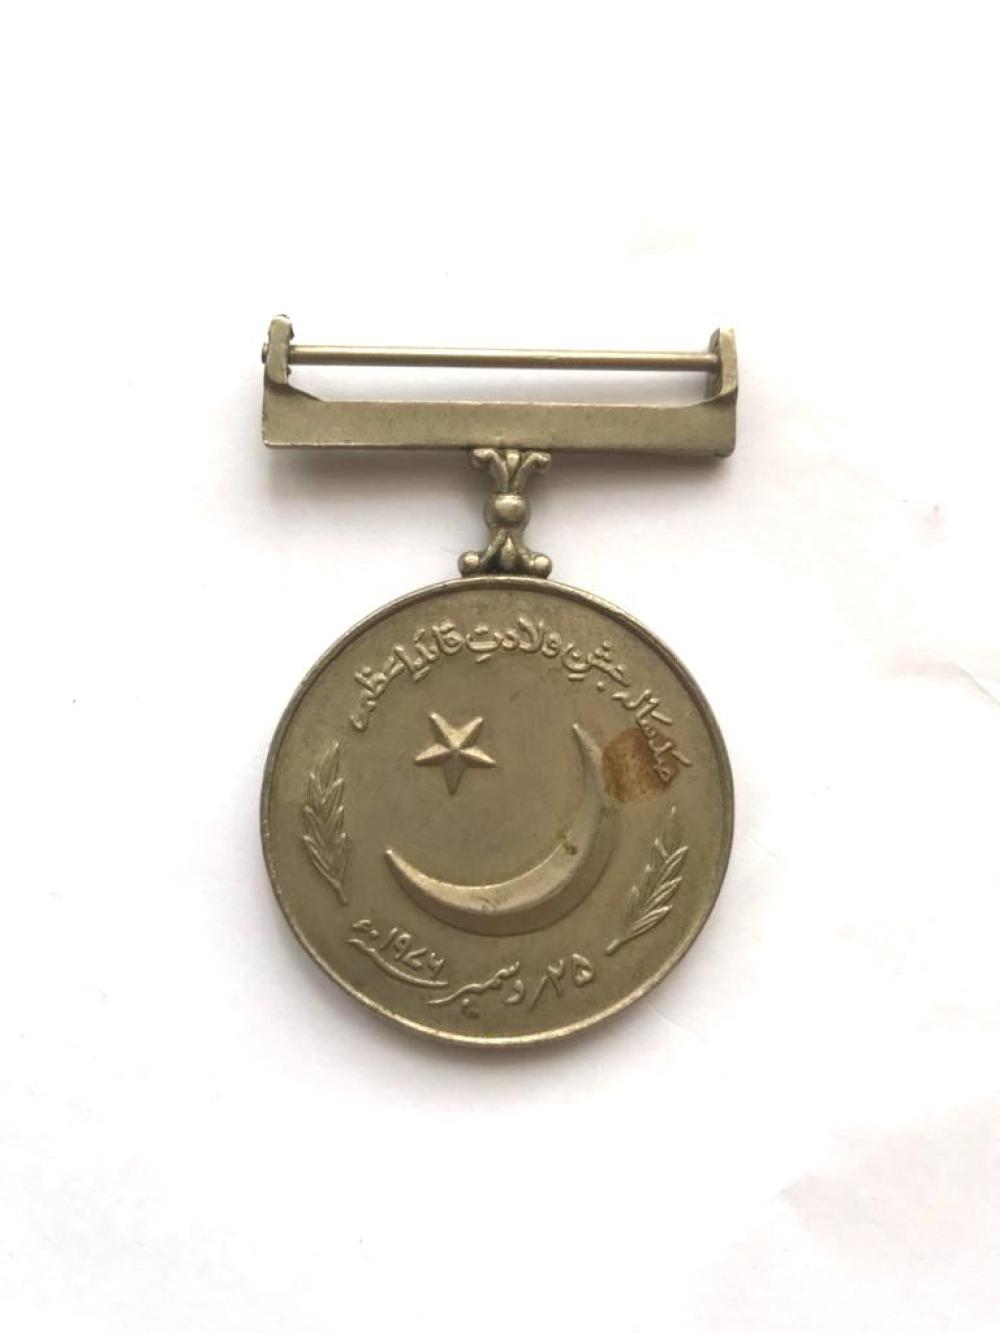 Büyük Önderin Yüzüncü Doğum Yıldönümü Madalyası. 1976 - Muhammed Ali CİNNAH / Madalya